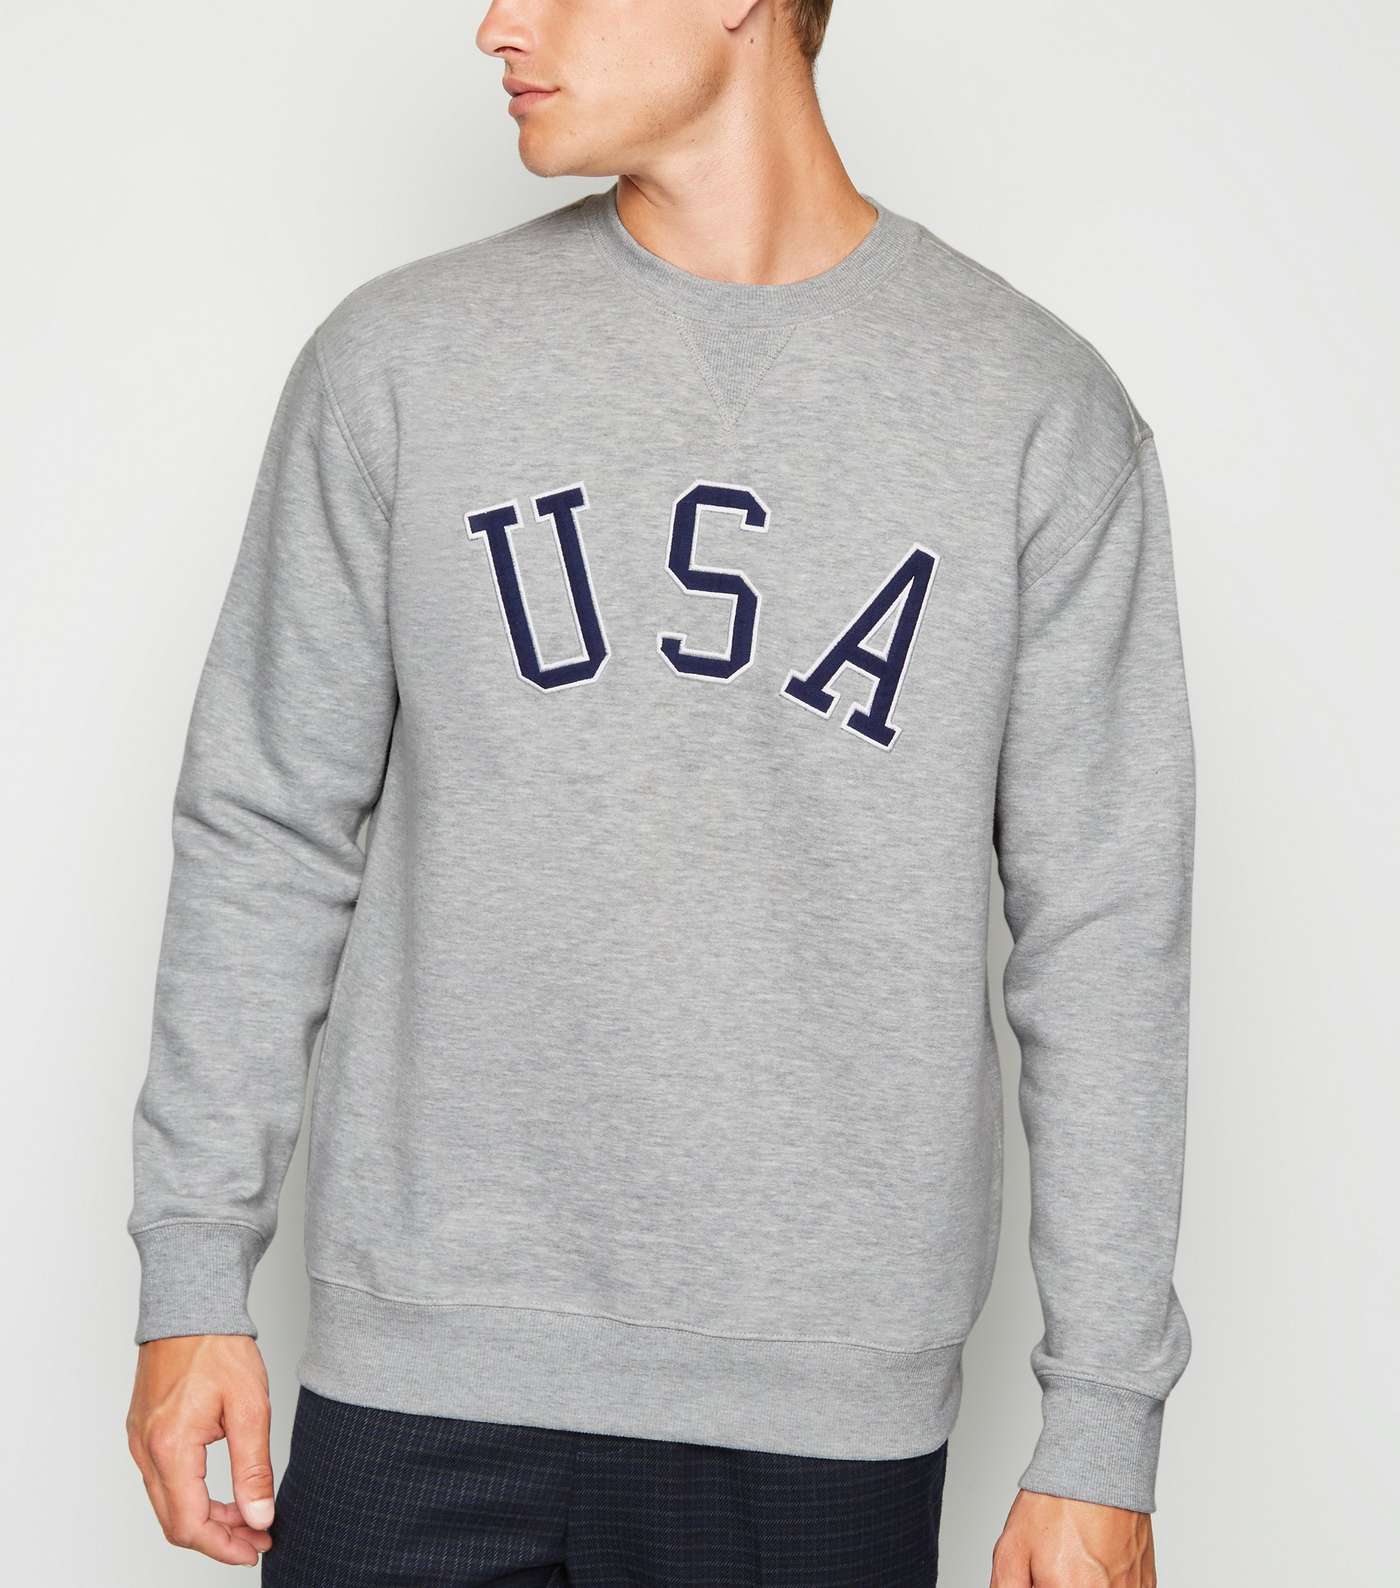 Grey Marl USA Slogan Sweatshirt